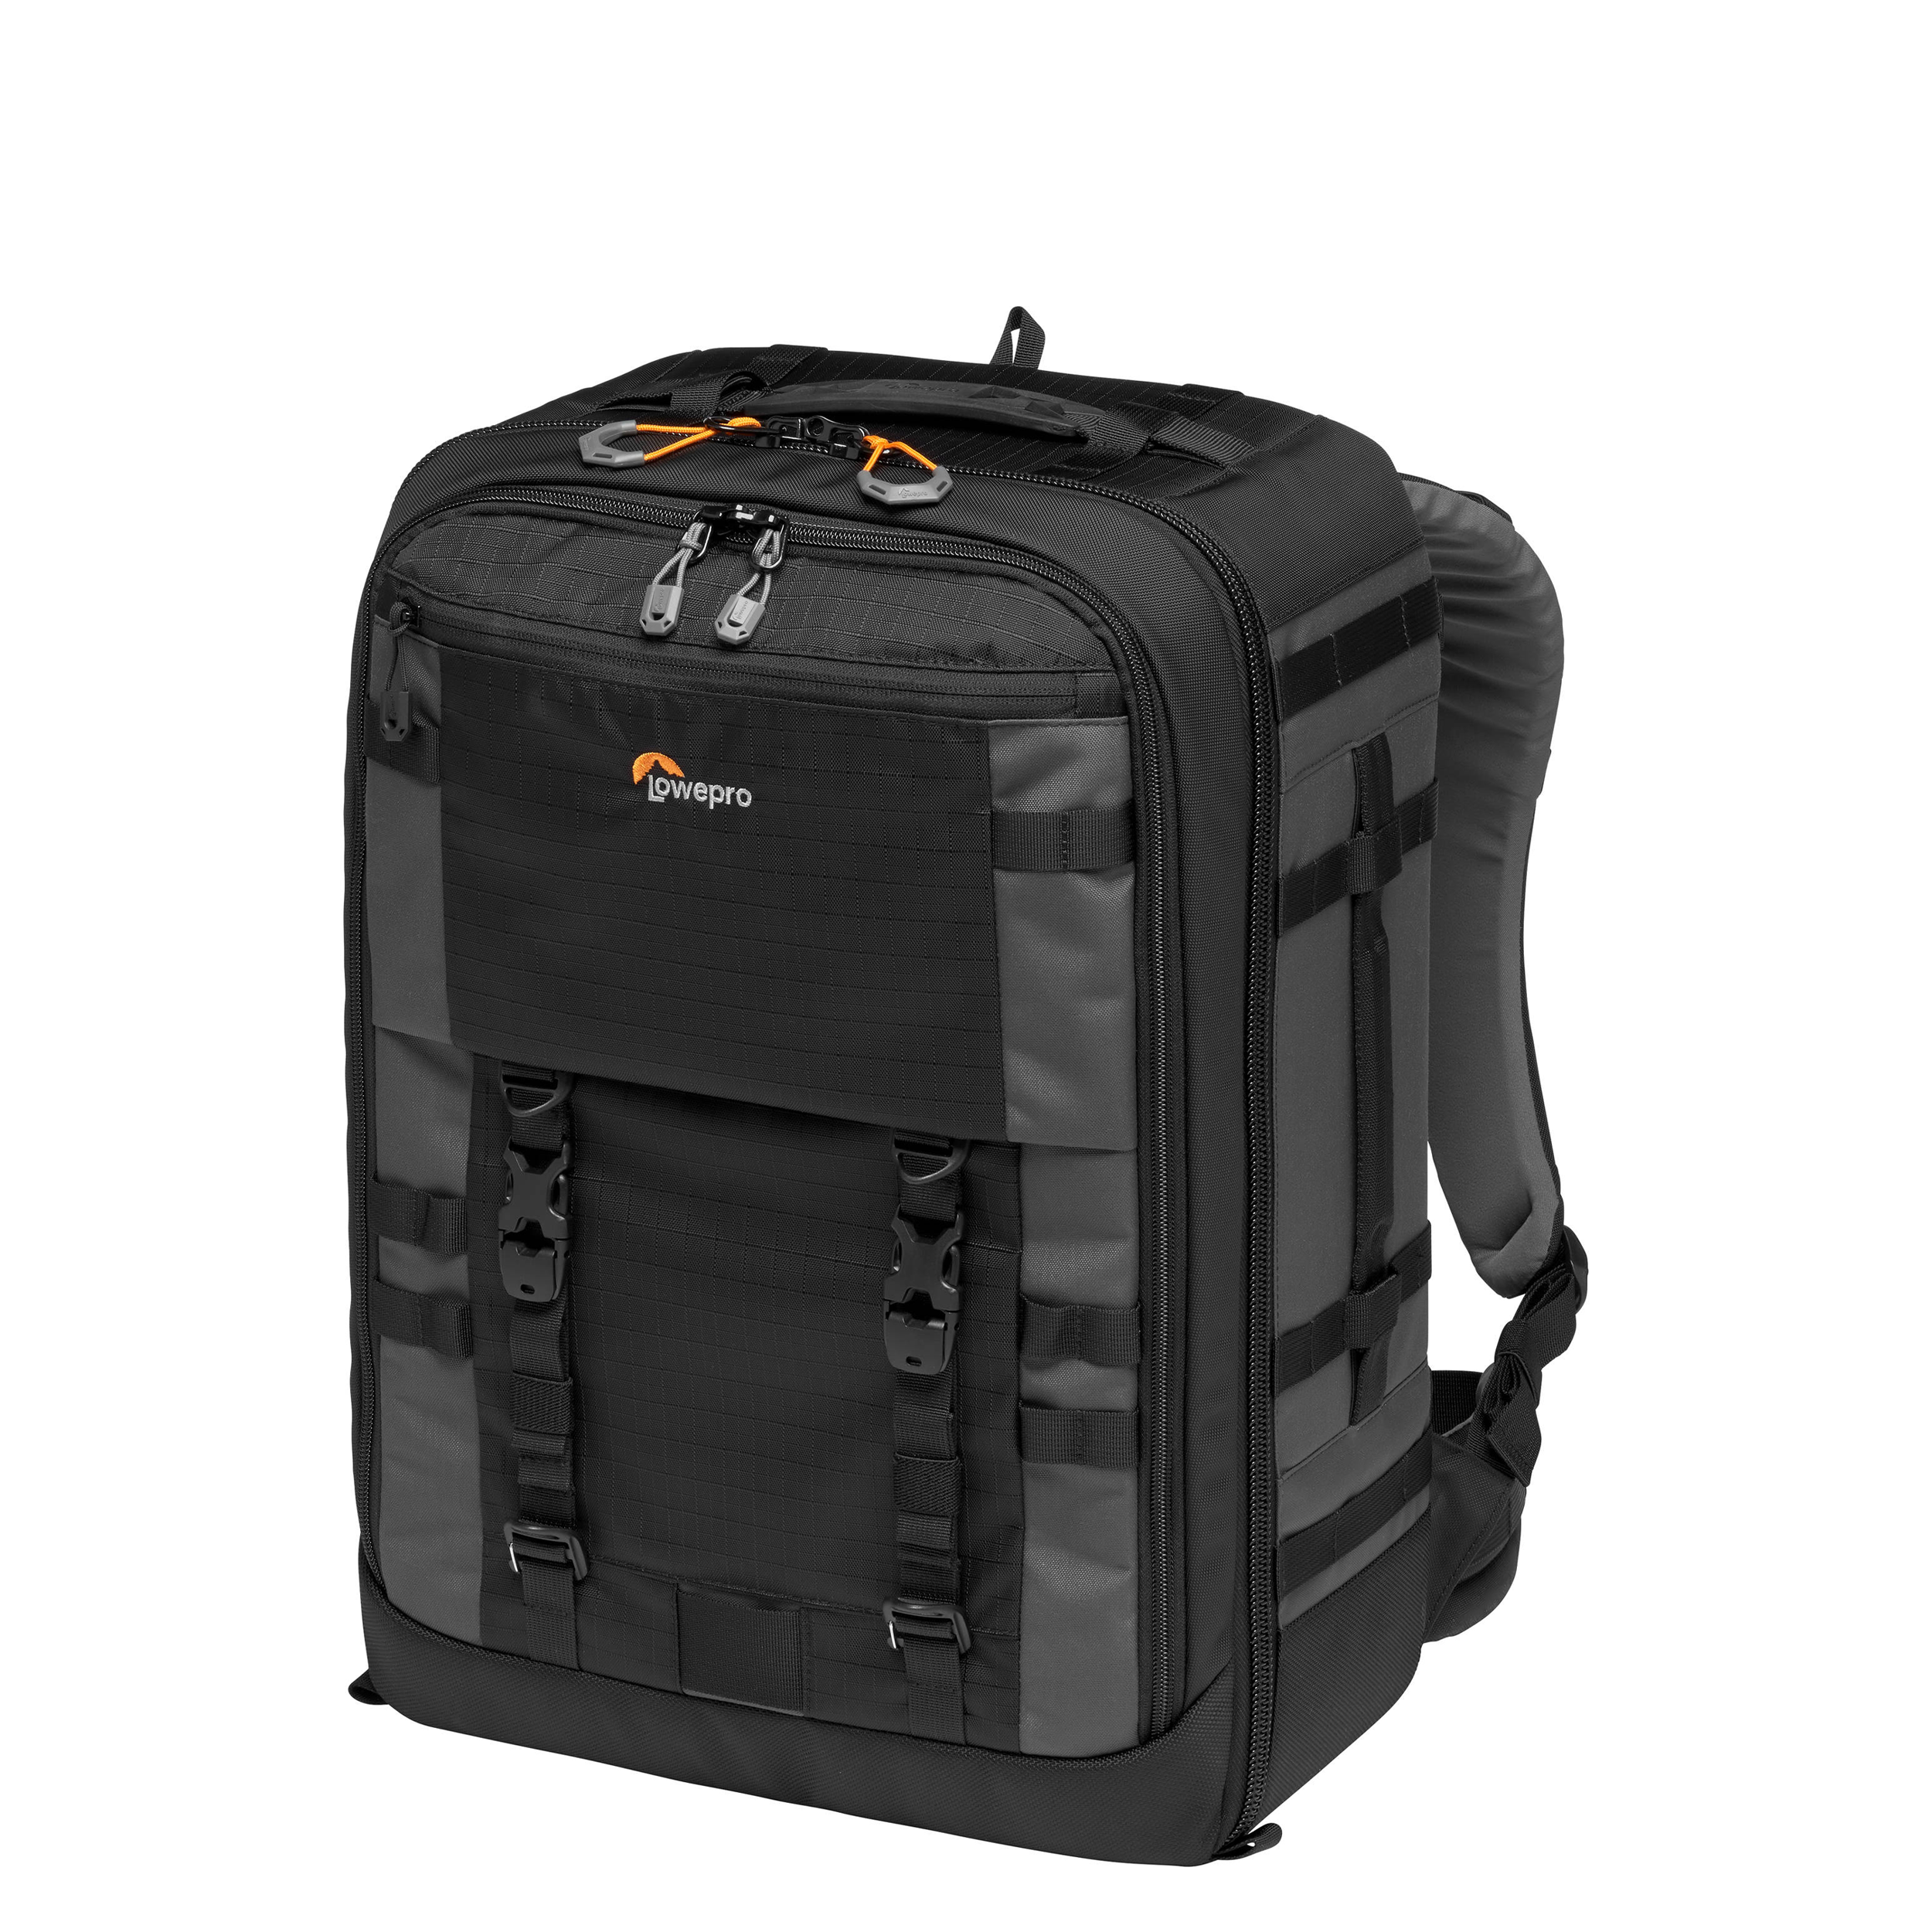 Lowepro Pro Trekker BP 450 AW II Backpack - Black